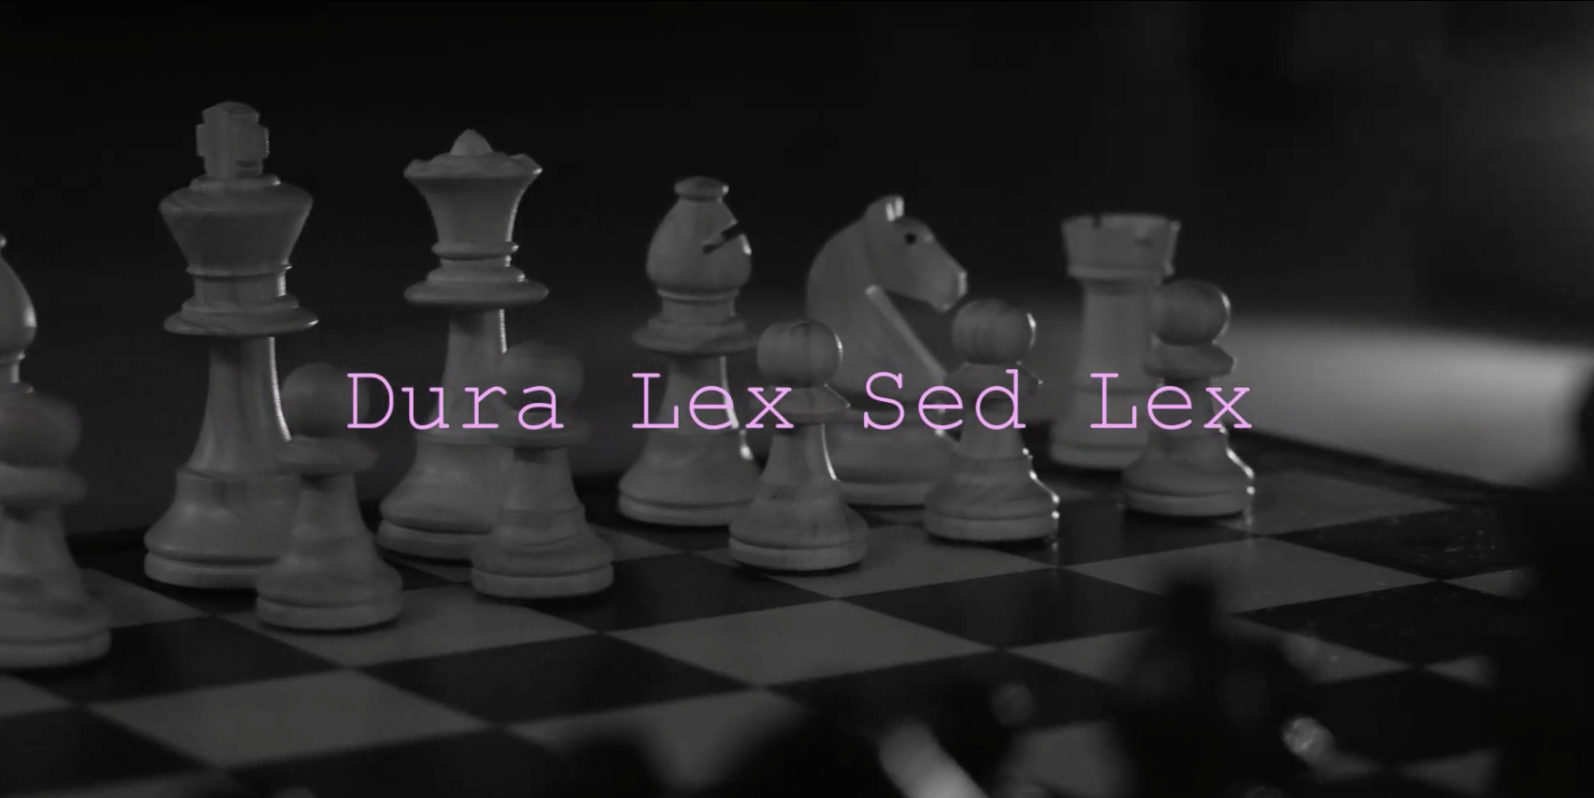   Dura Lex Sed Lex    by Alessandro del Castillo